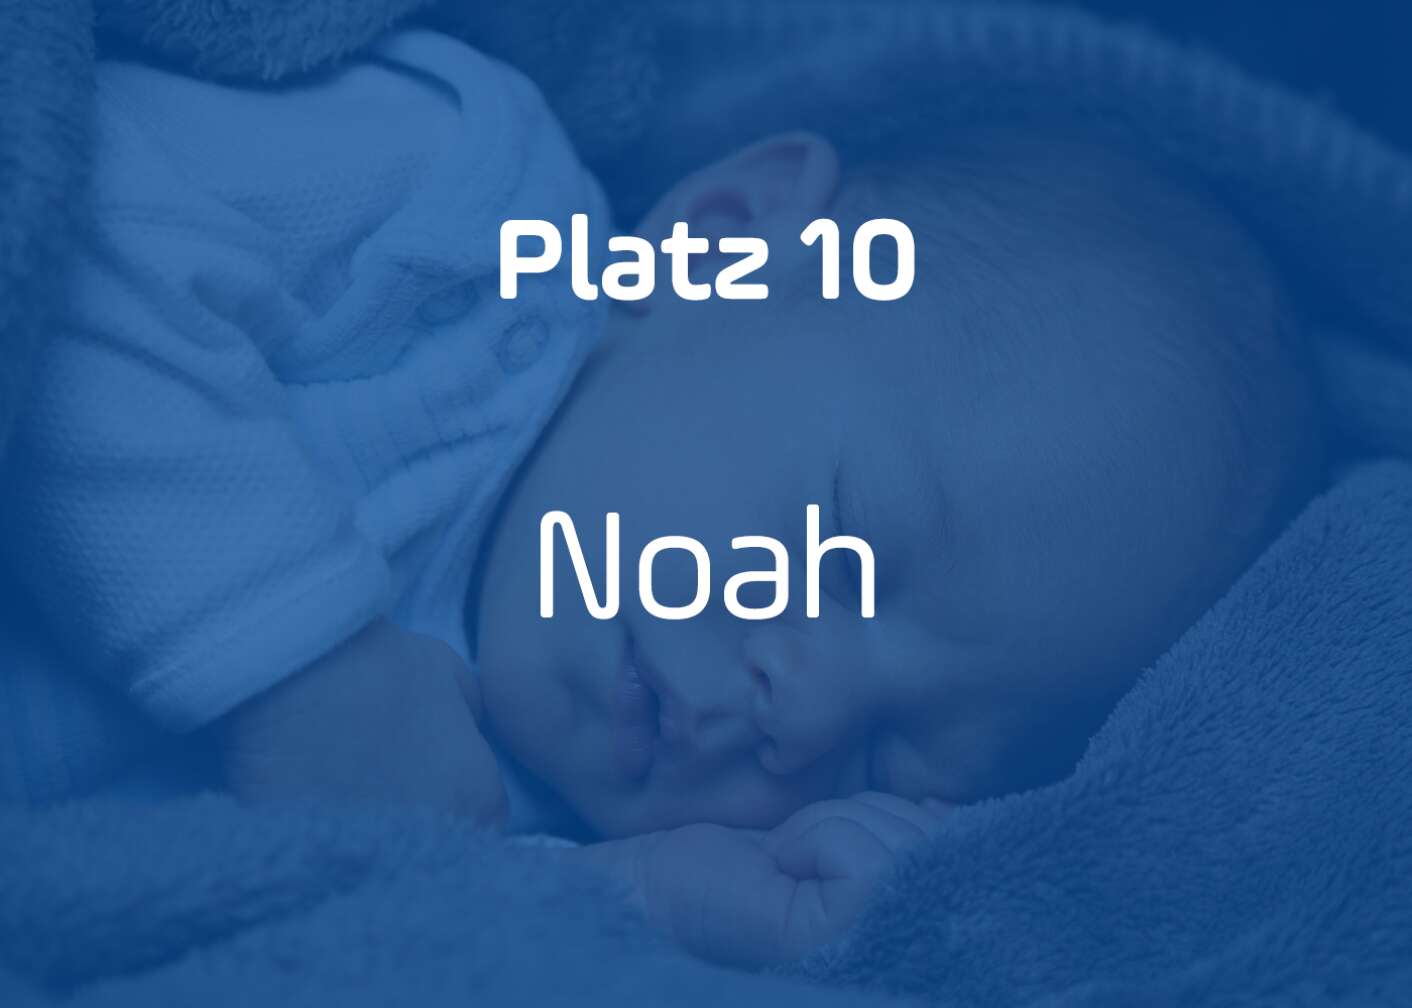 Noah Platz 10